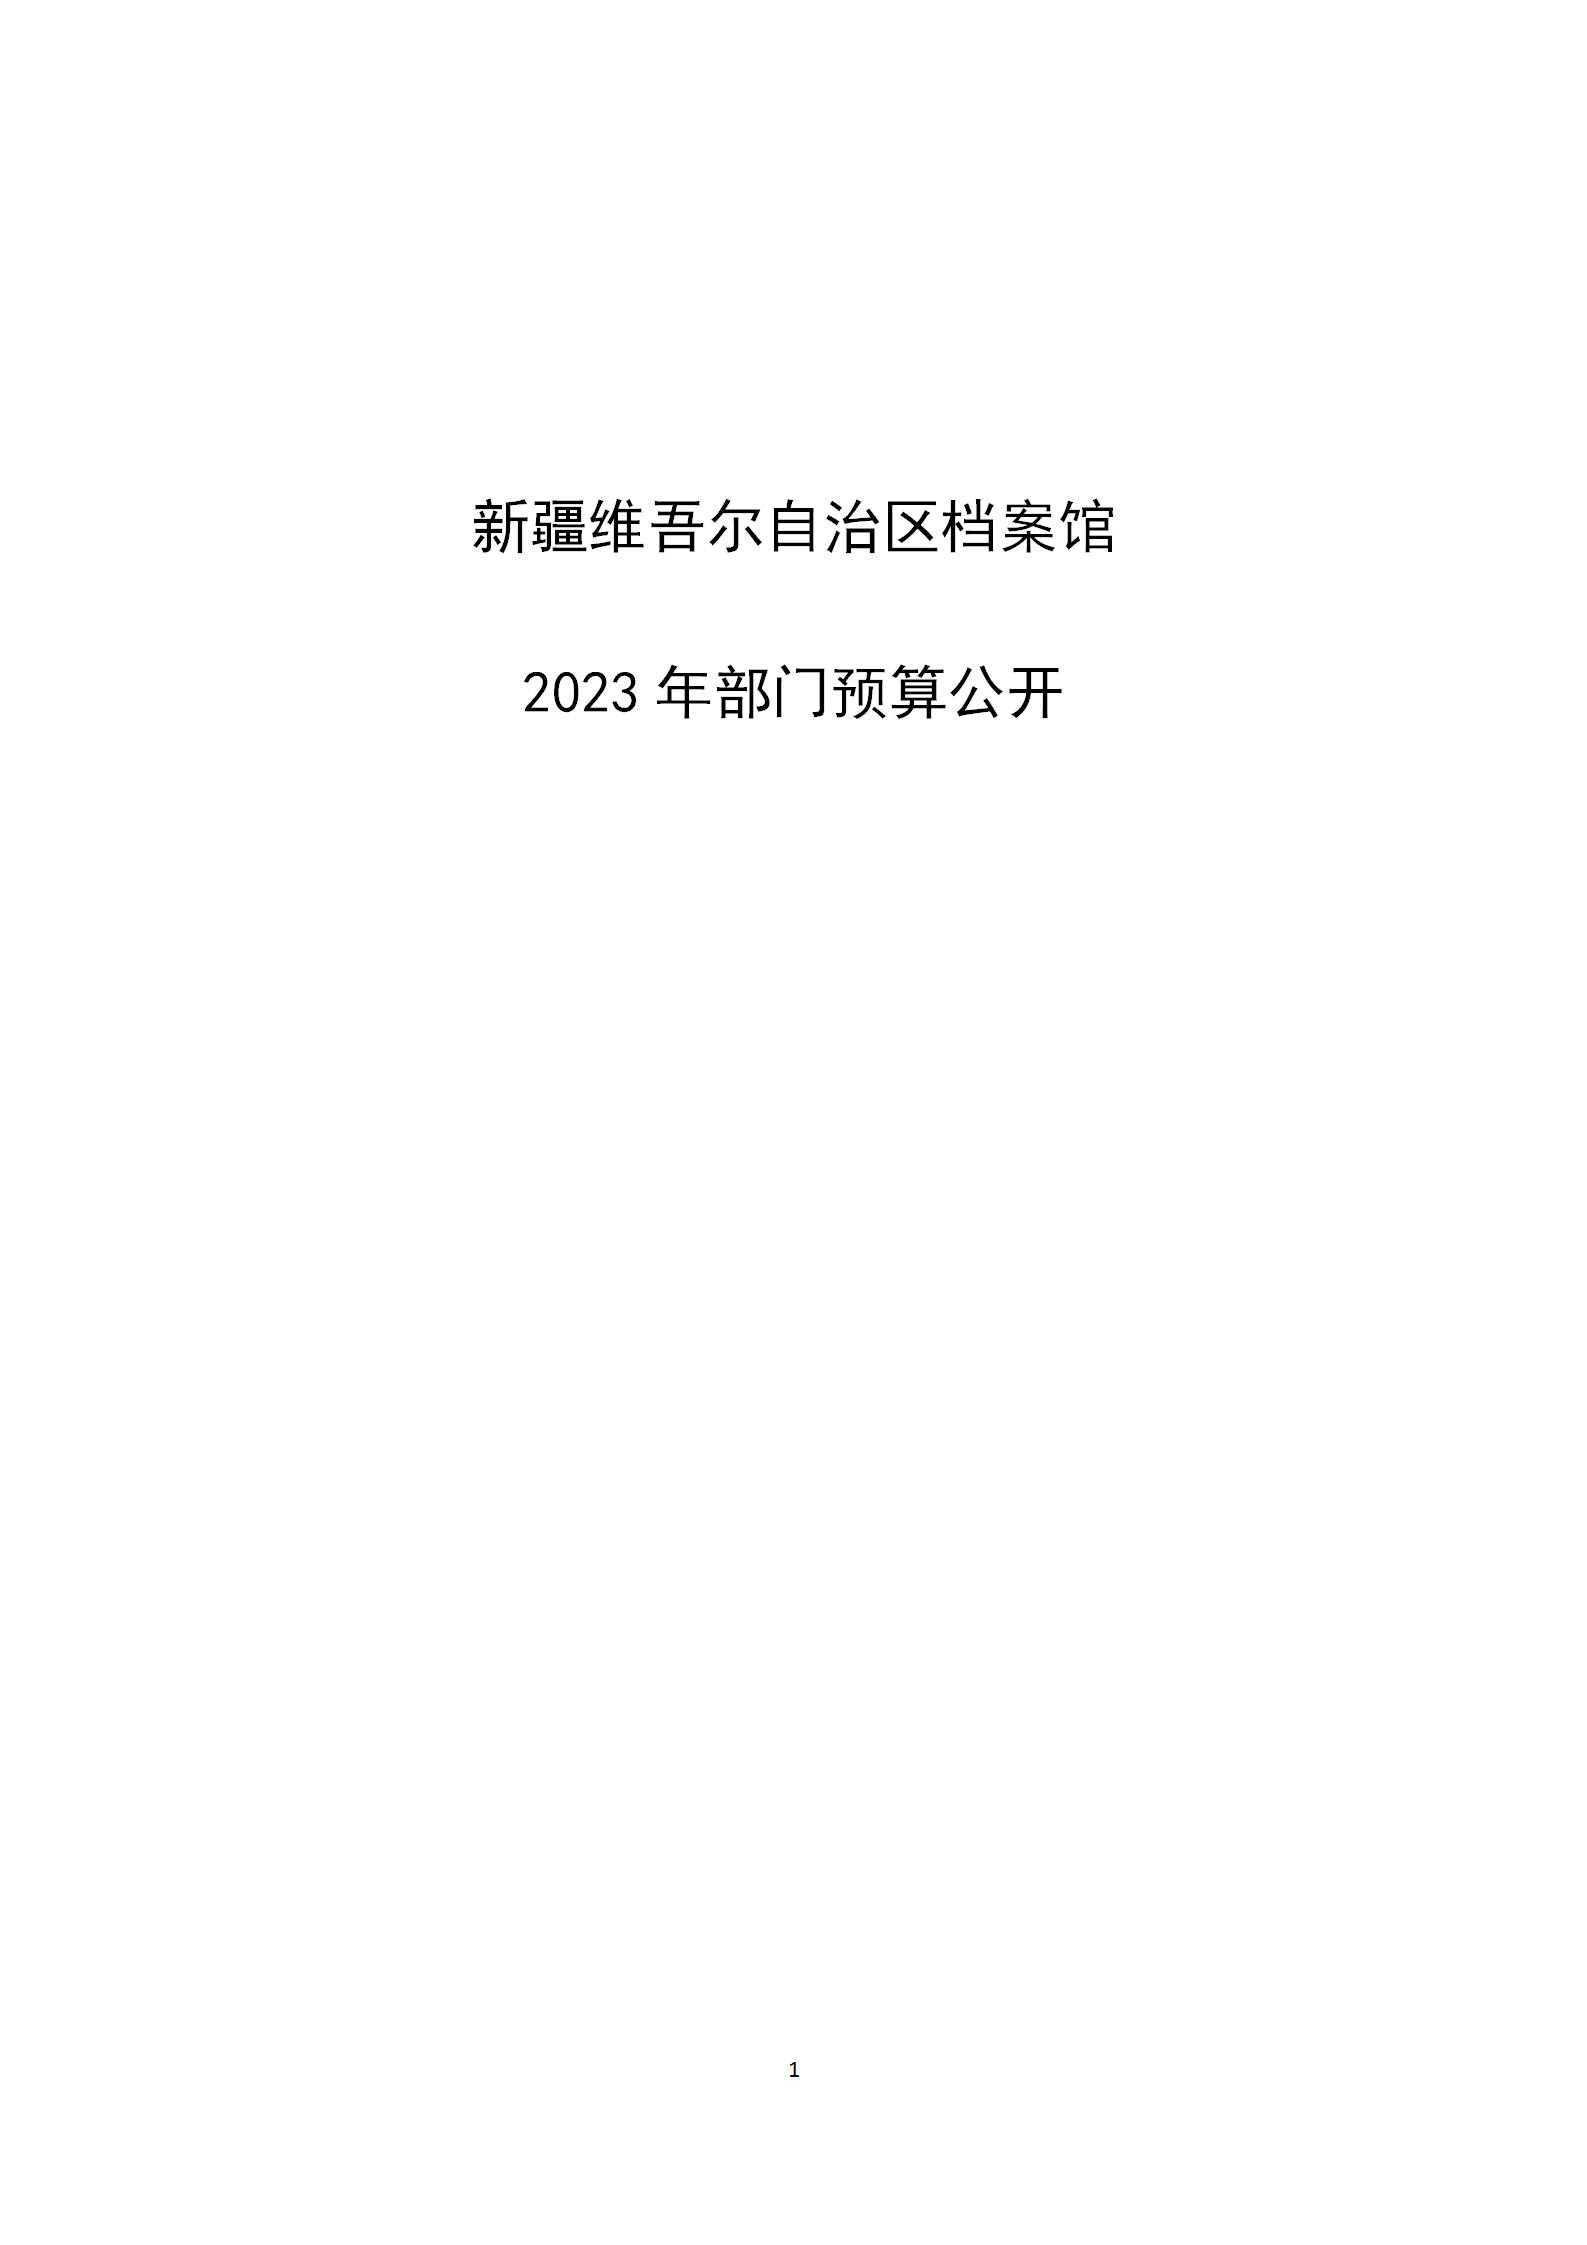 【新疆维吾尔自治区档案馆】【C】部门预算公开报告编写_01.jpg